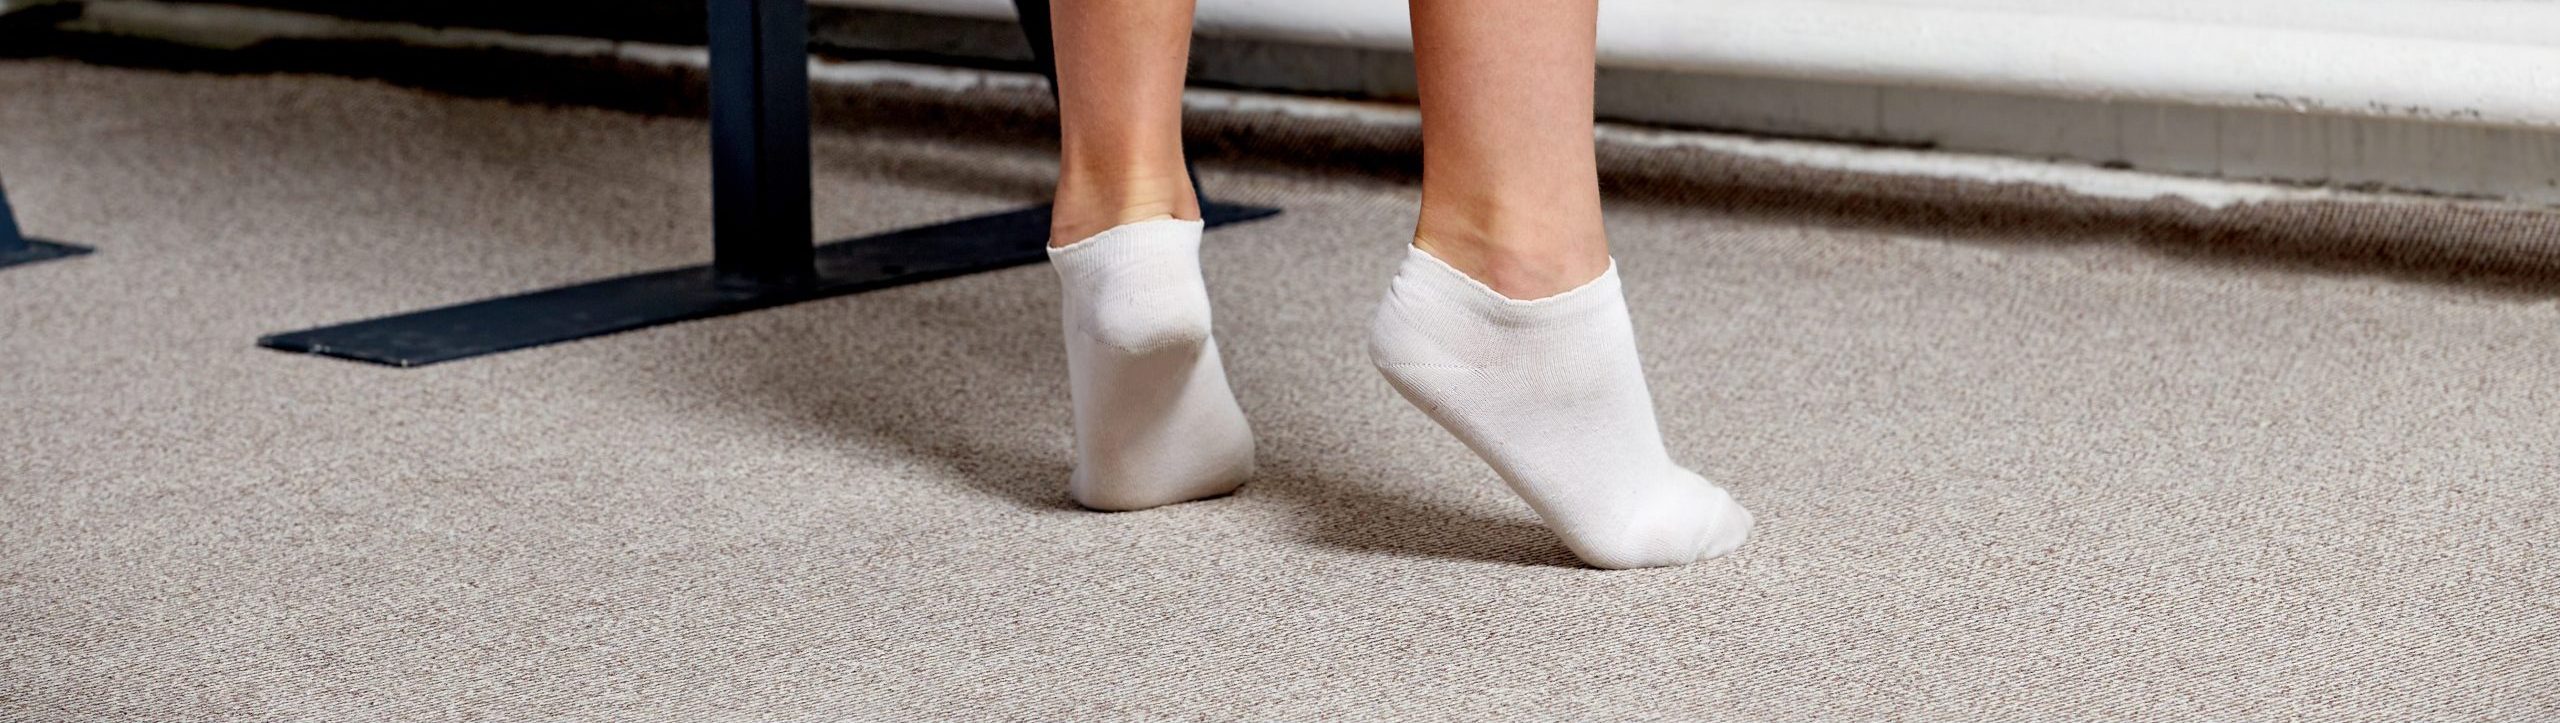 Wander G Women's Yoga Socks Non Slip Skid Socks With Grips Pilates Ballet  Barre Socks For